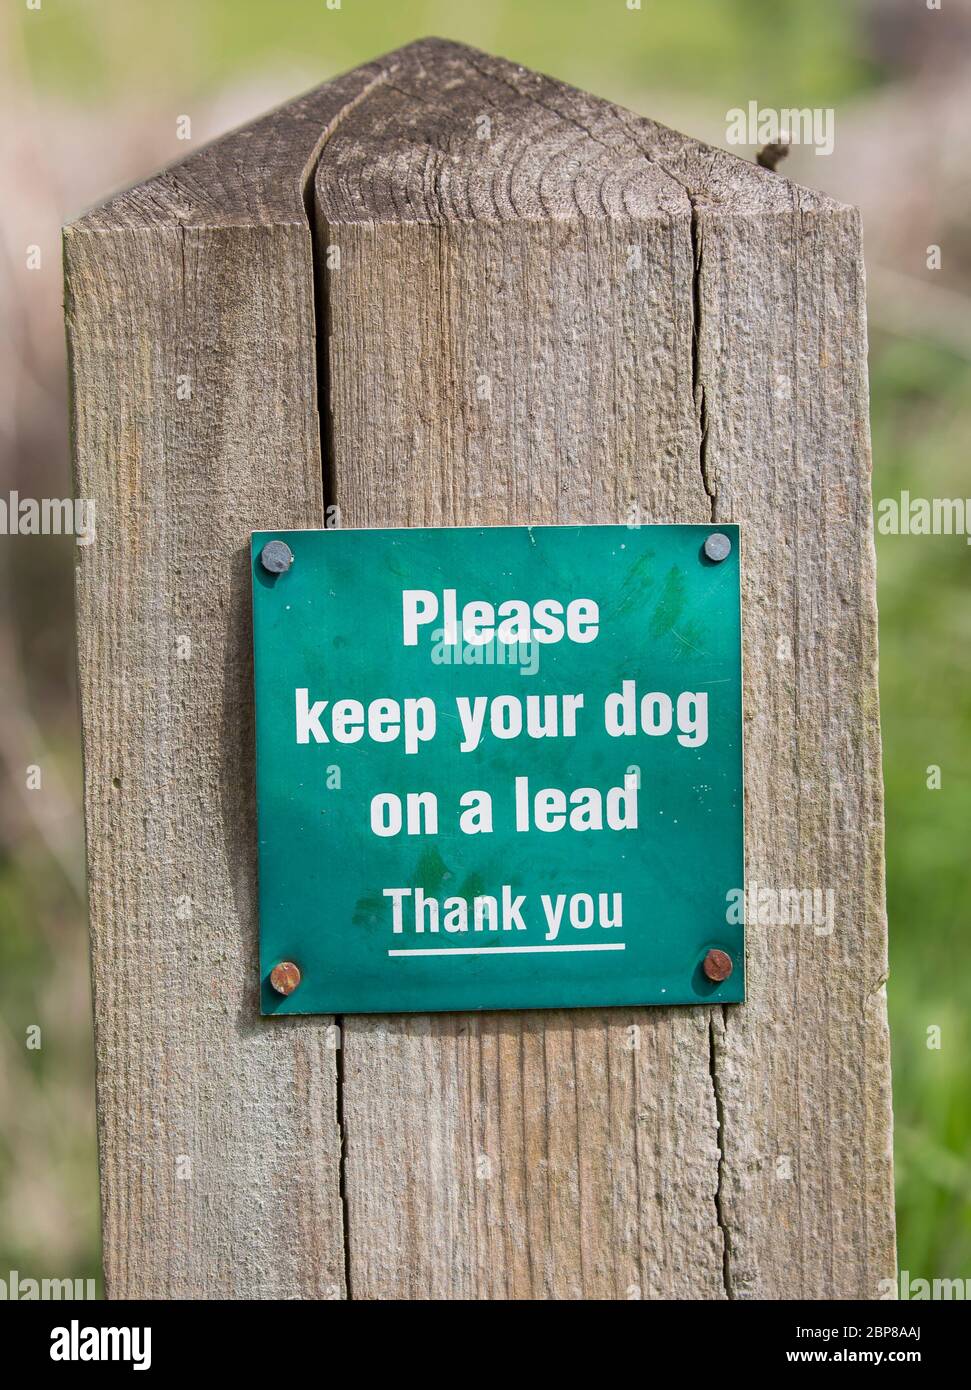 Signez sur le billet pour les propriétaires de chiens, avis de garder leur chien en laisse lors de la marche dans la campagne, au Royaume-Uni. Code campagne, concept de responsabilité. Banque D'Images